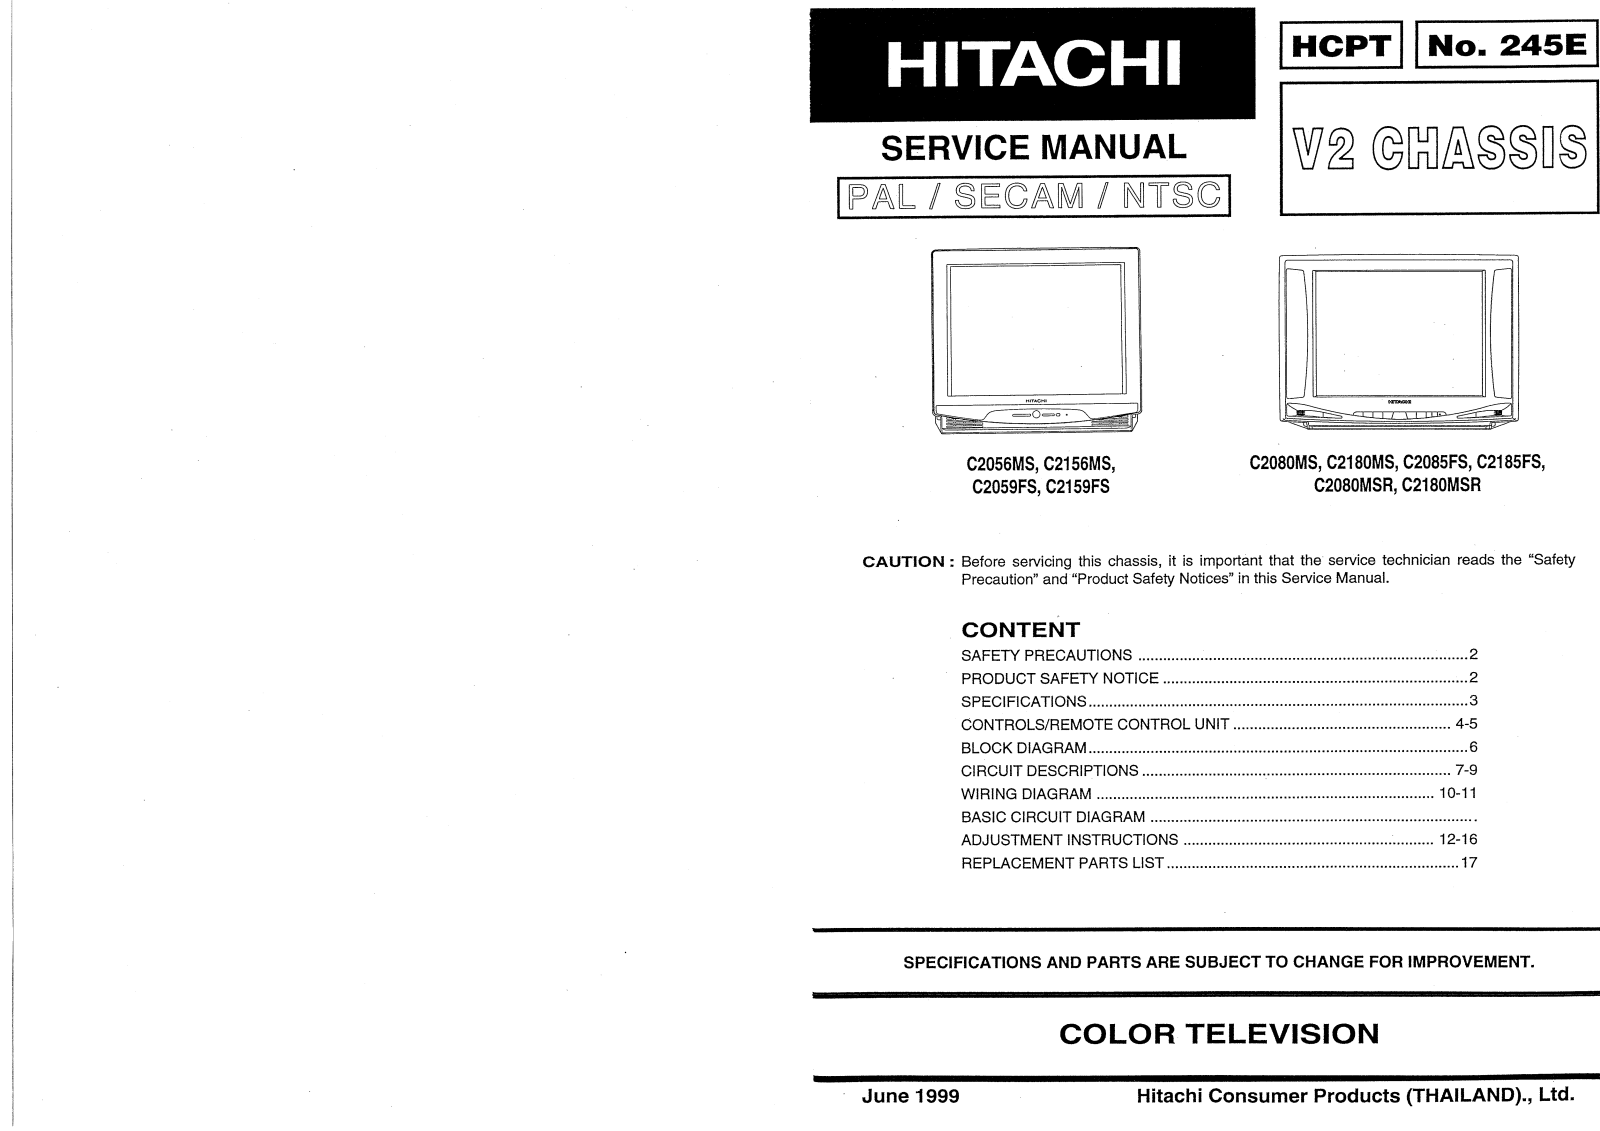 Hitachi C2056, C2156, C2059, C2159, C2080 Service Manual